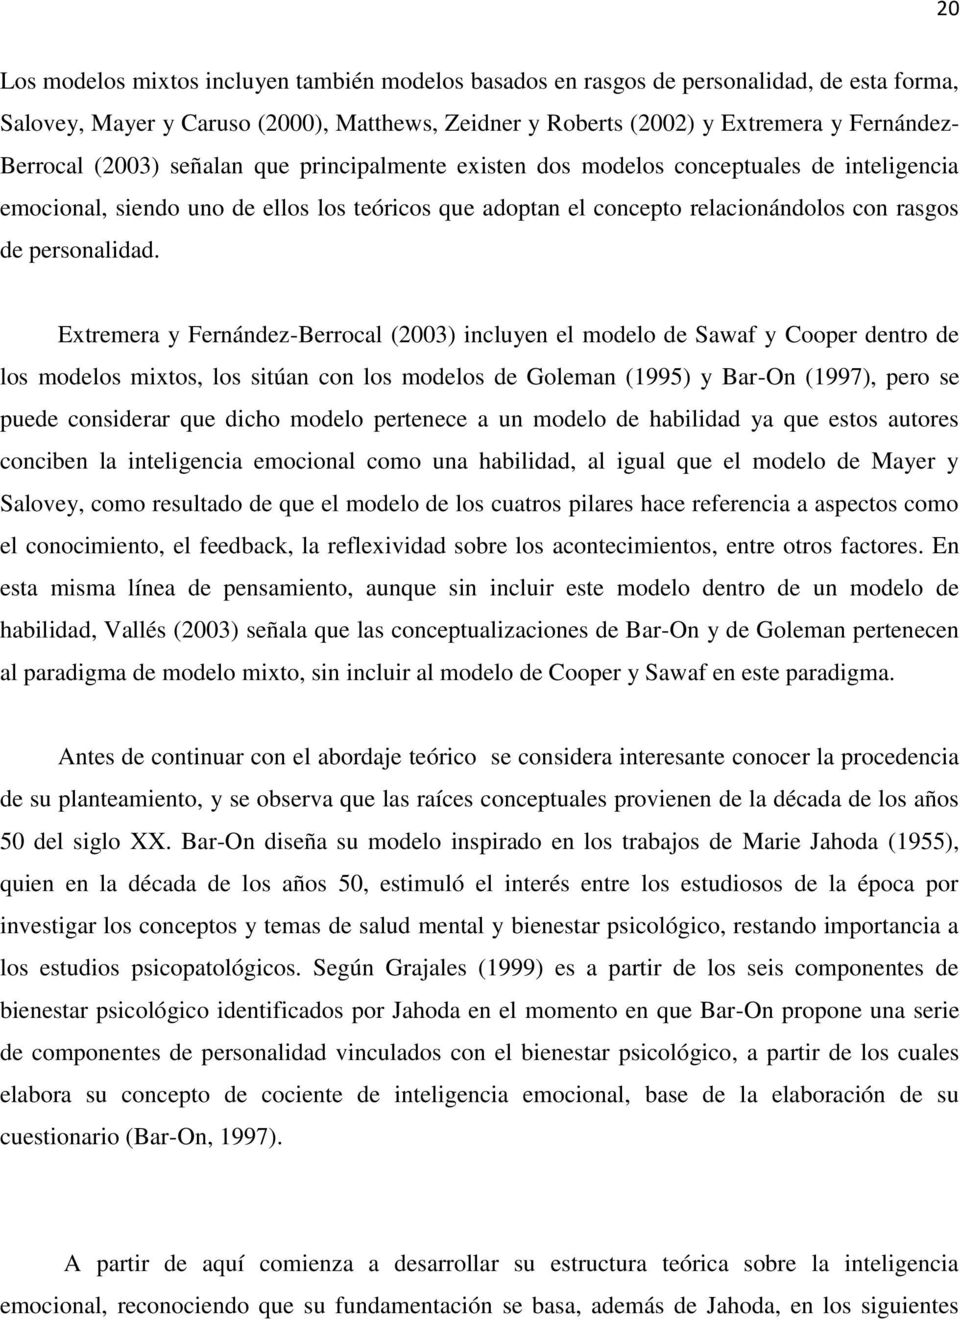 Extremera y Fernández-Berrocal (2003) incluyen el modelo de Sawaf y Cooper dentro de los modelos mixtos, los sitúan con los modelos de Goleman (1995) y Bar-On (1997), pero se puede considerar que